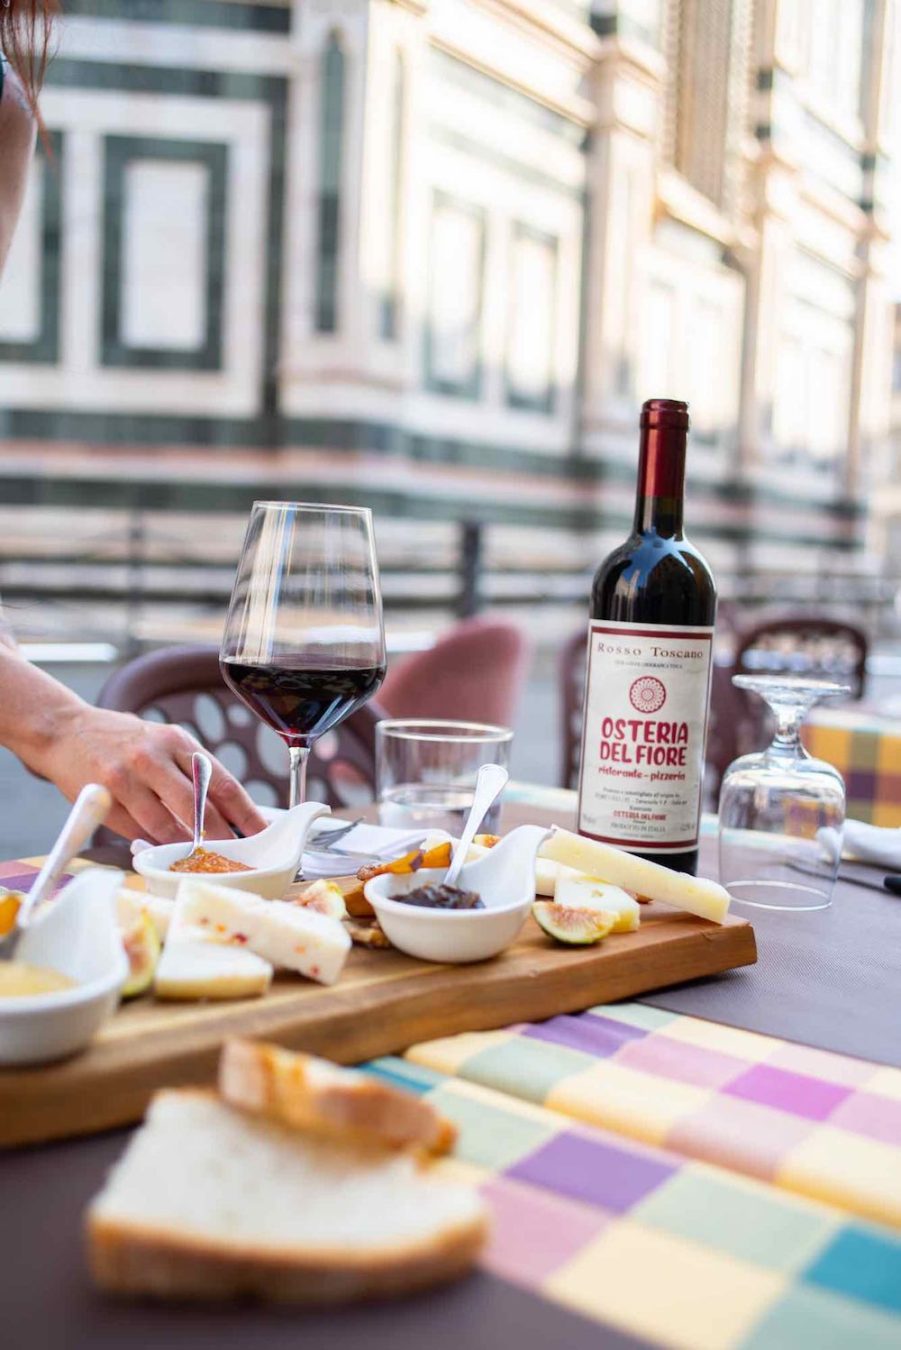 Tagliere e bottiglia di vino all'Osteria del Fiore, ristorante in Duomo a Firenze